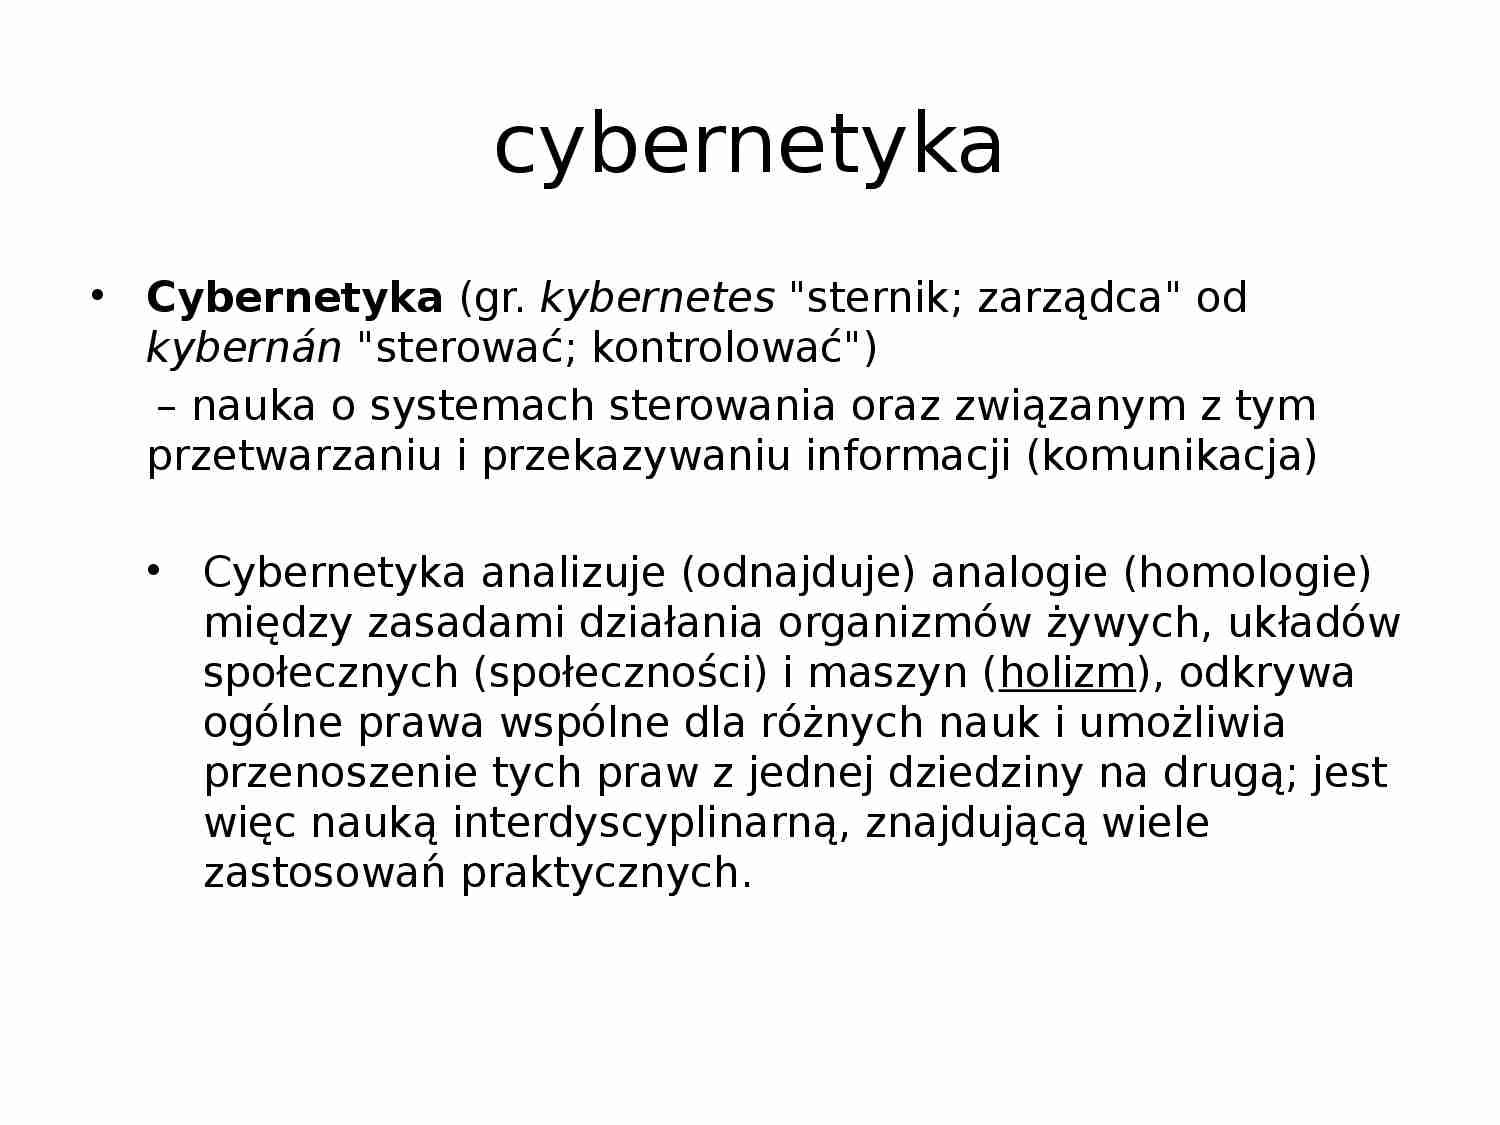 Podstawy cybernetyki - prezentacja - strona 1